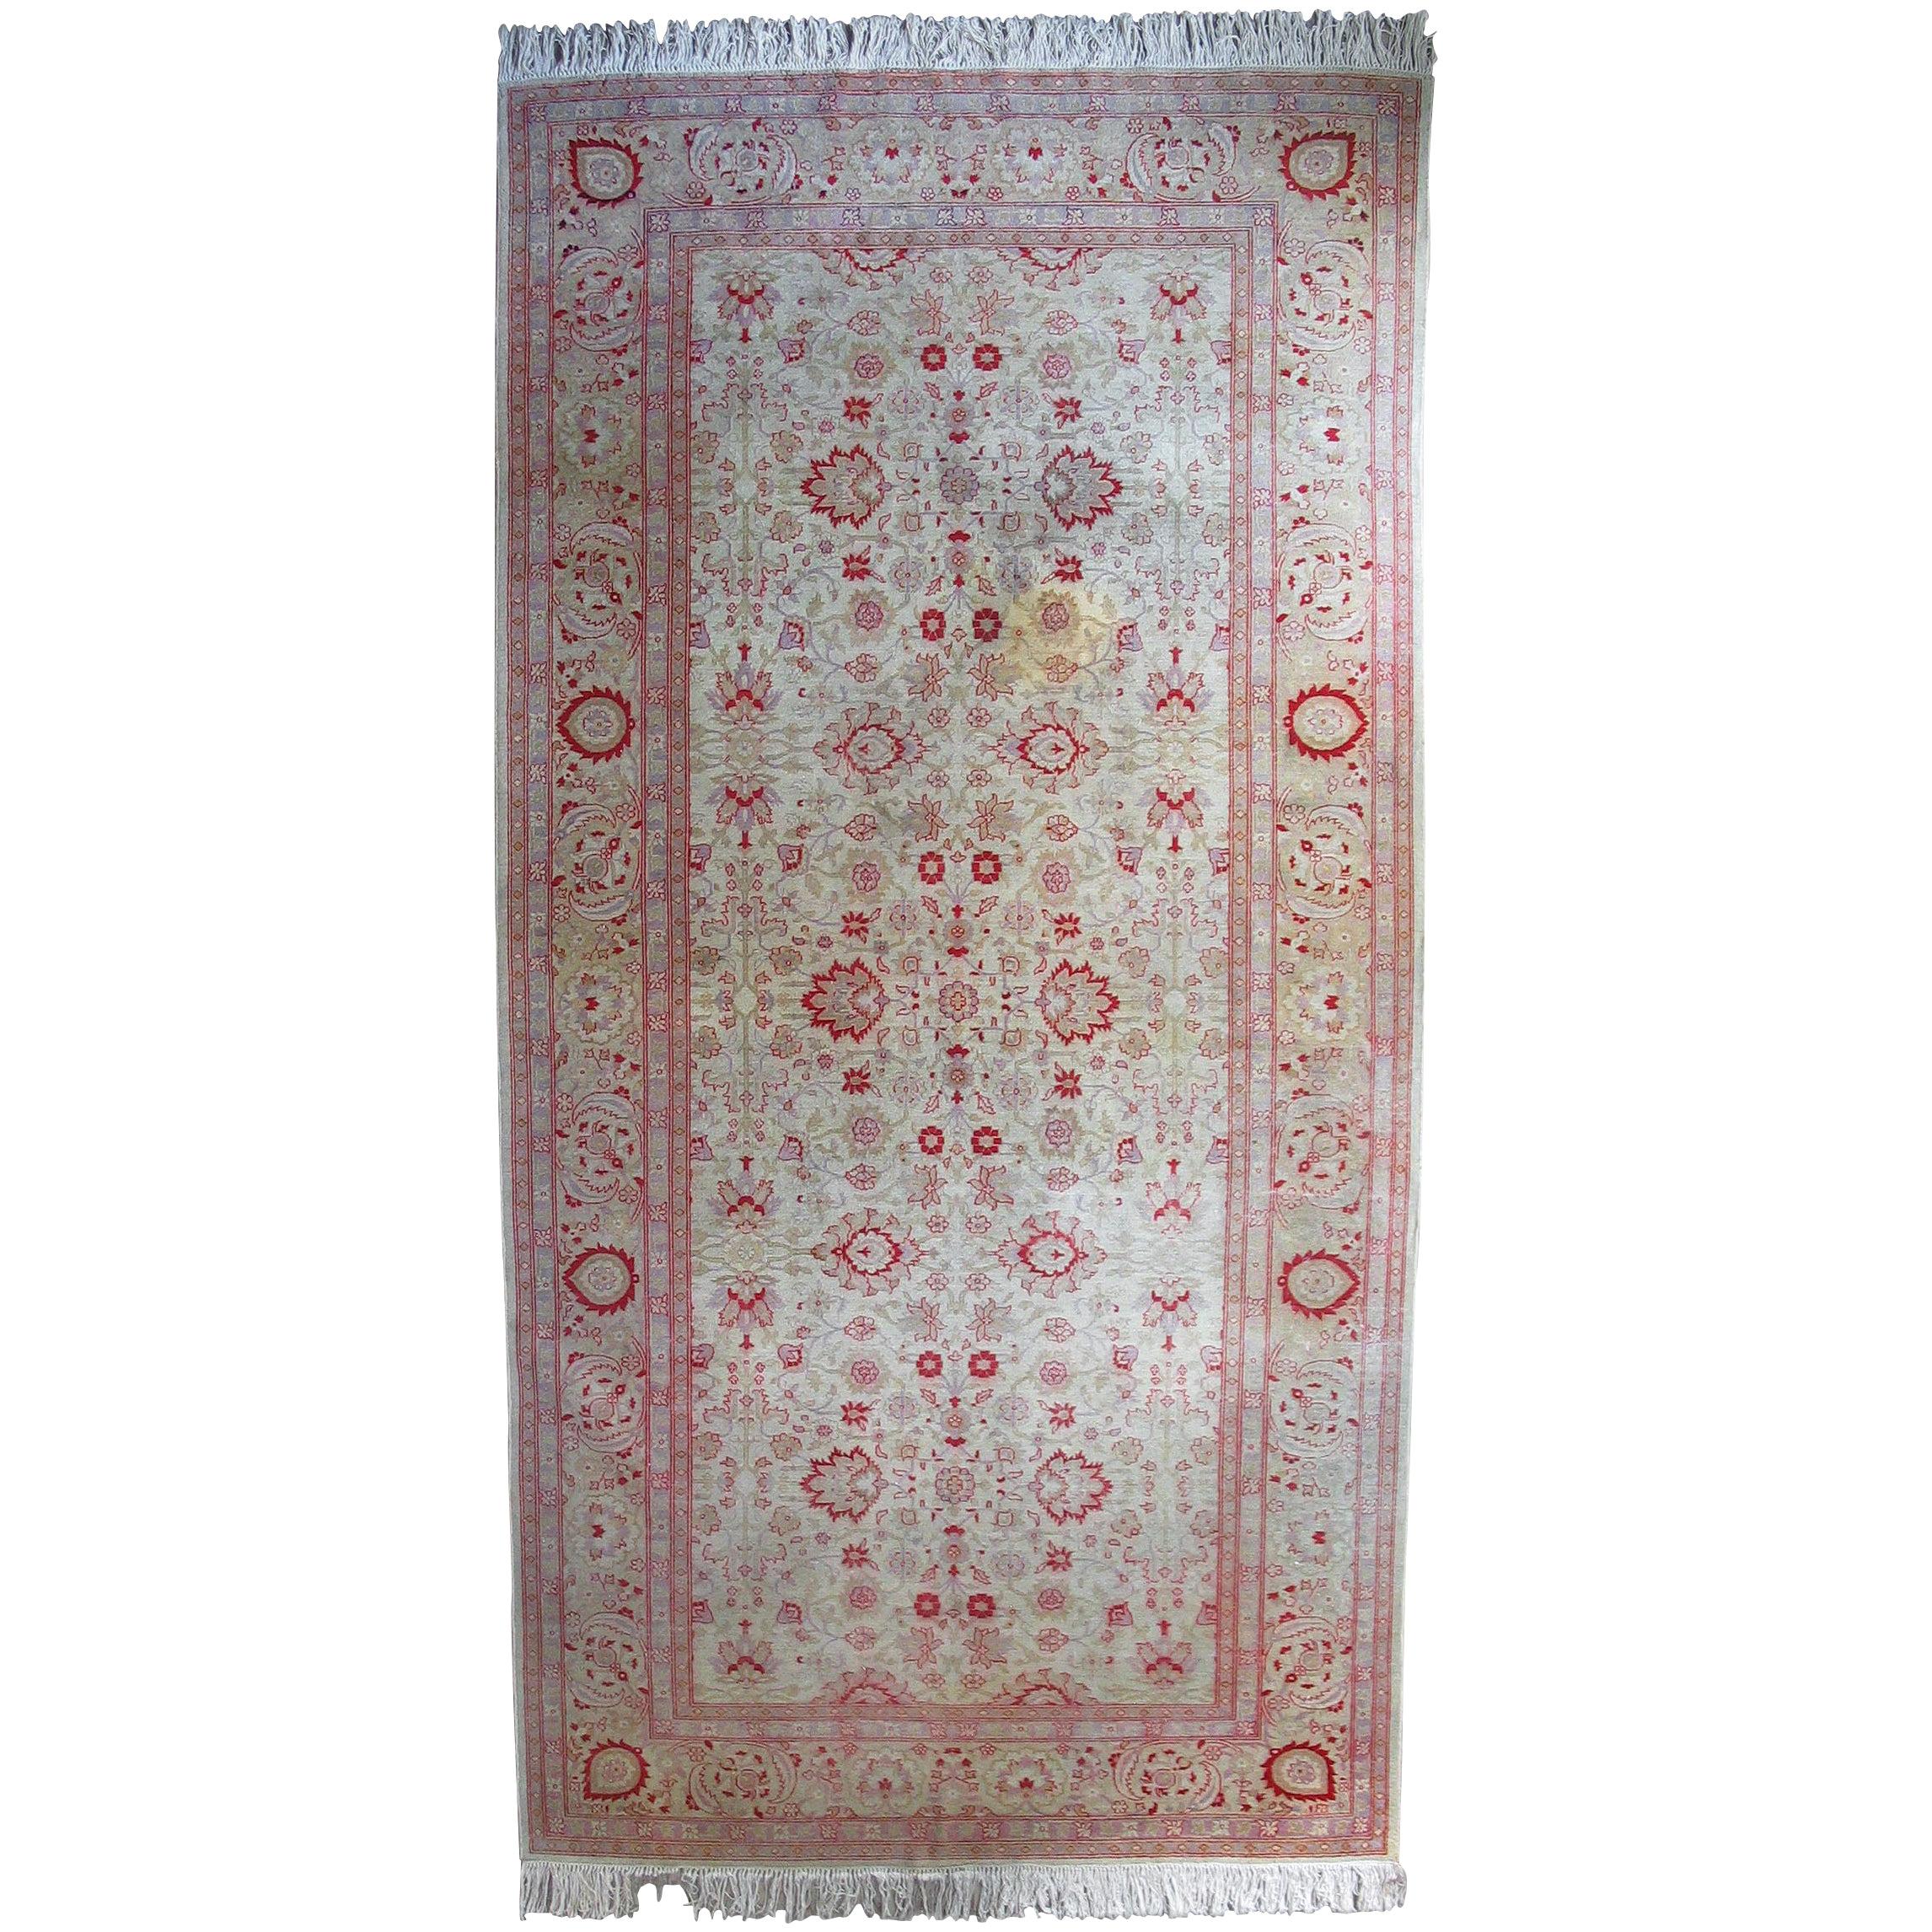 Antique Amritsar Carpet North India, circa 1950